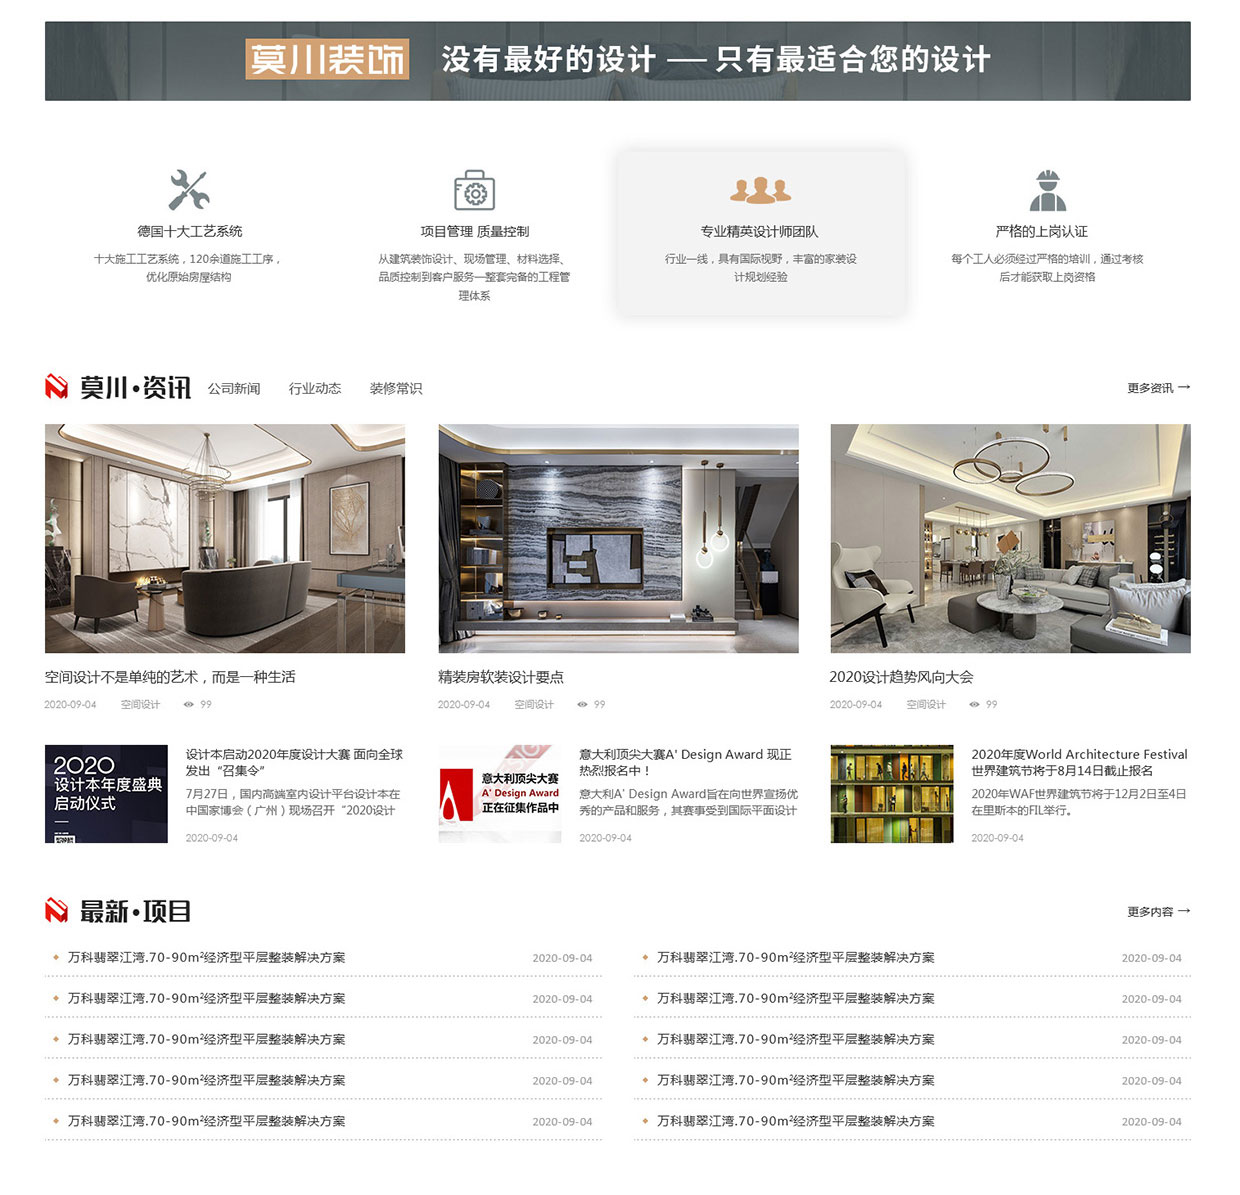 江蘇莫川建筑裝飾工程有限公司網站案例